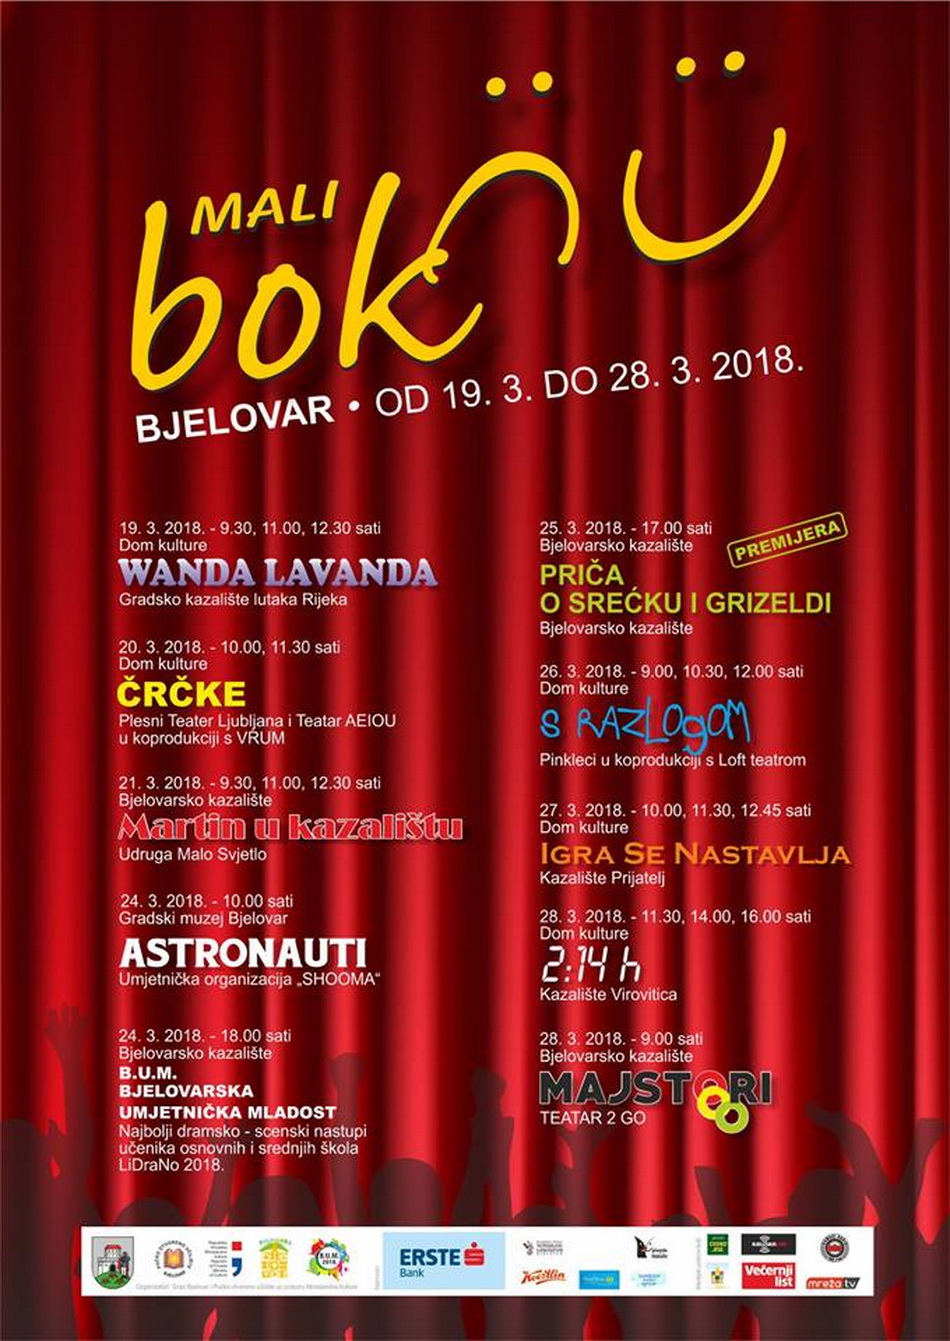 Priča o Srećku i Grizeldi u izvedbi Bjelovarskog kazališta – premijera na Malom BOK-u!